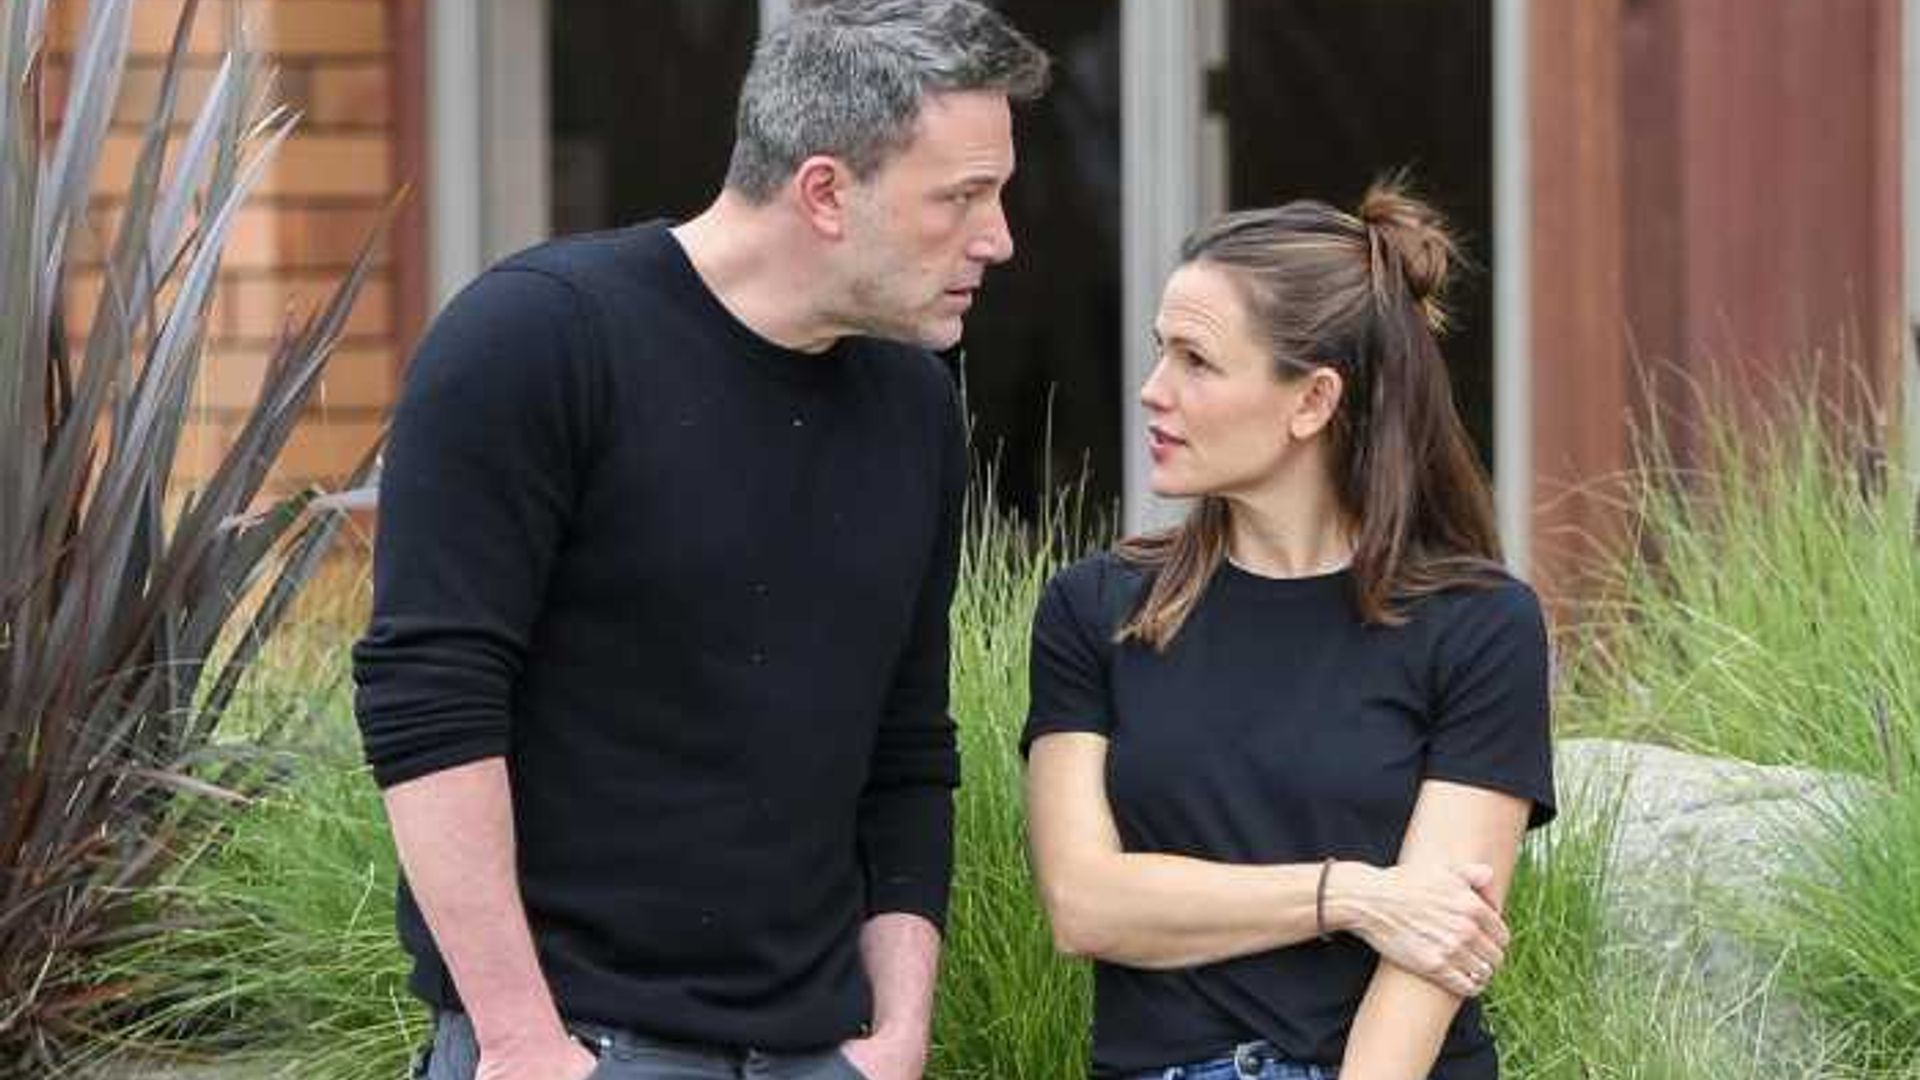 Jennifer Garner visits ex Ben Affleck amid divorce rumors